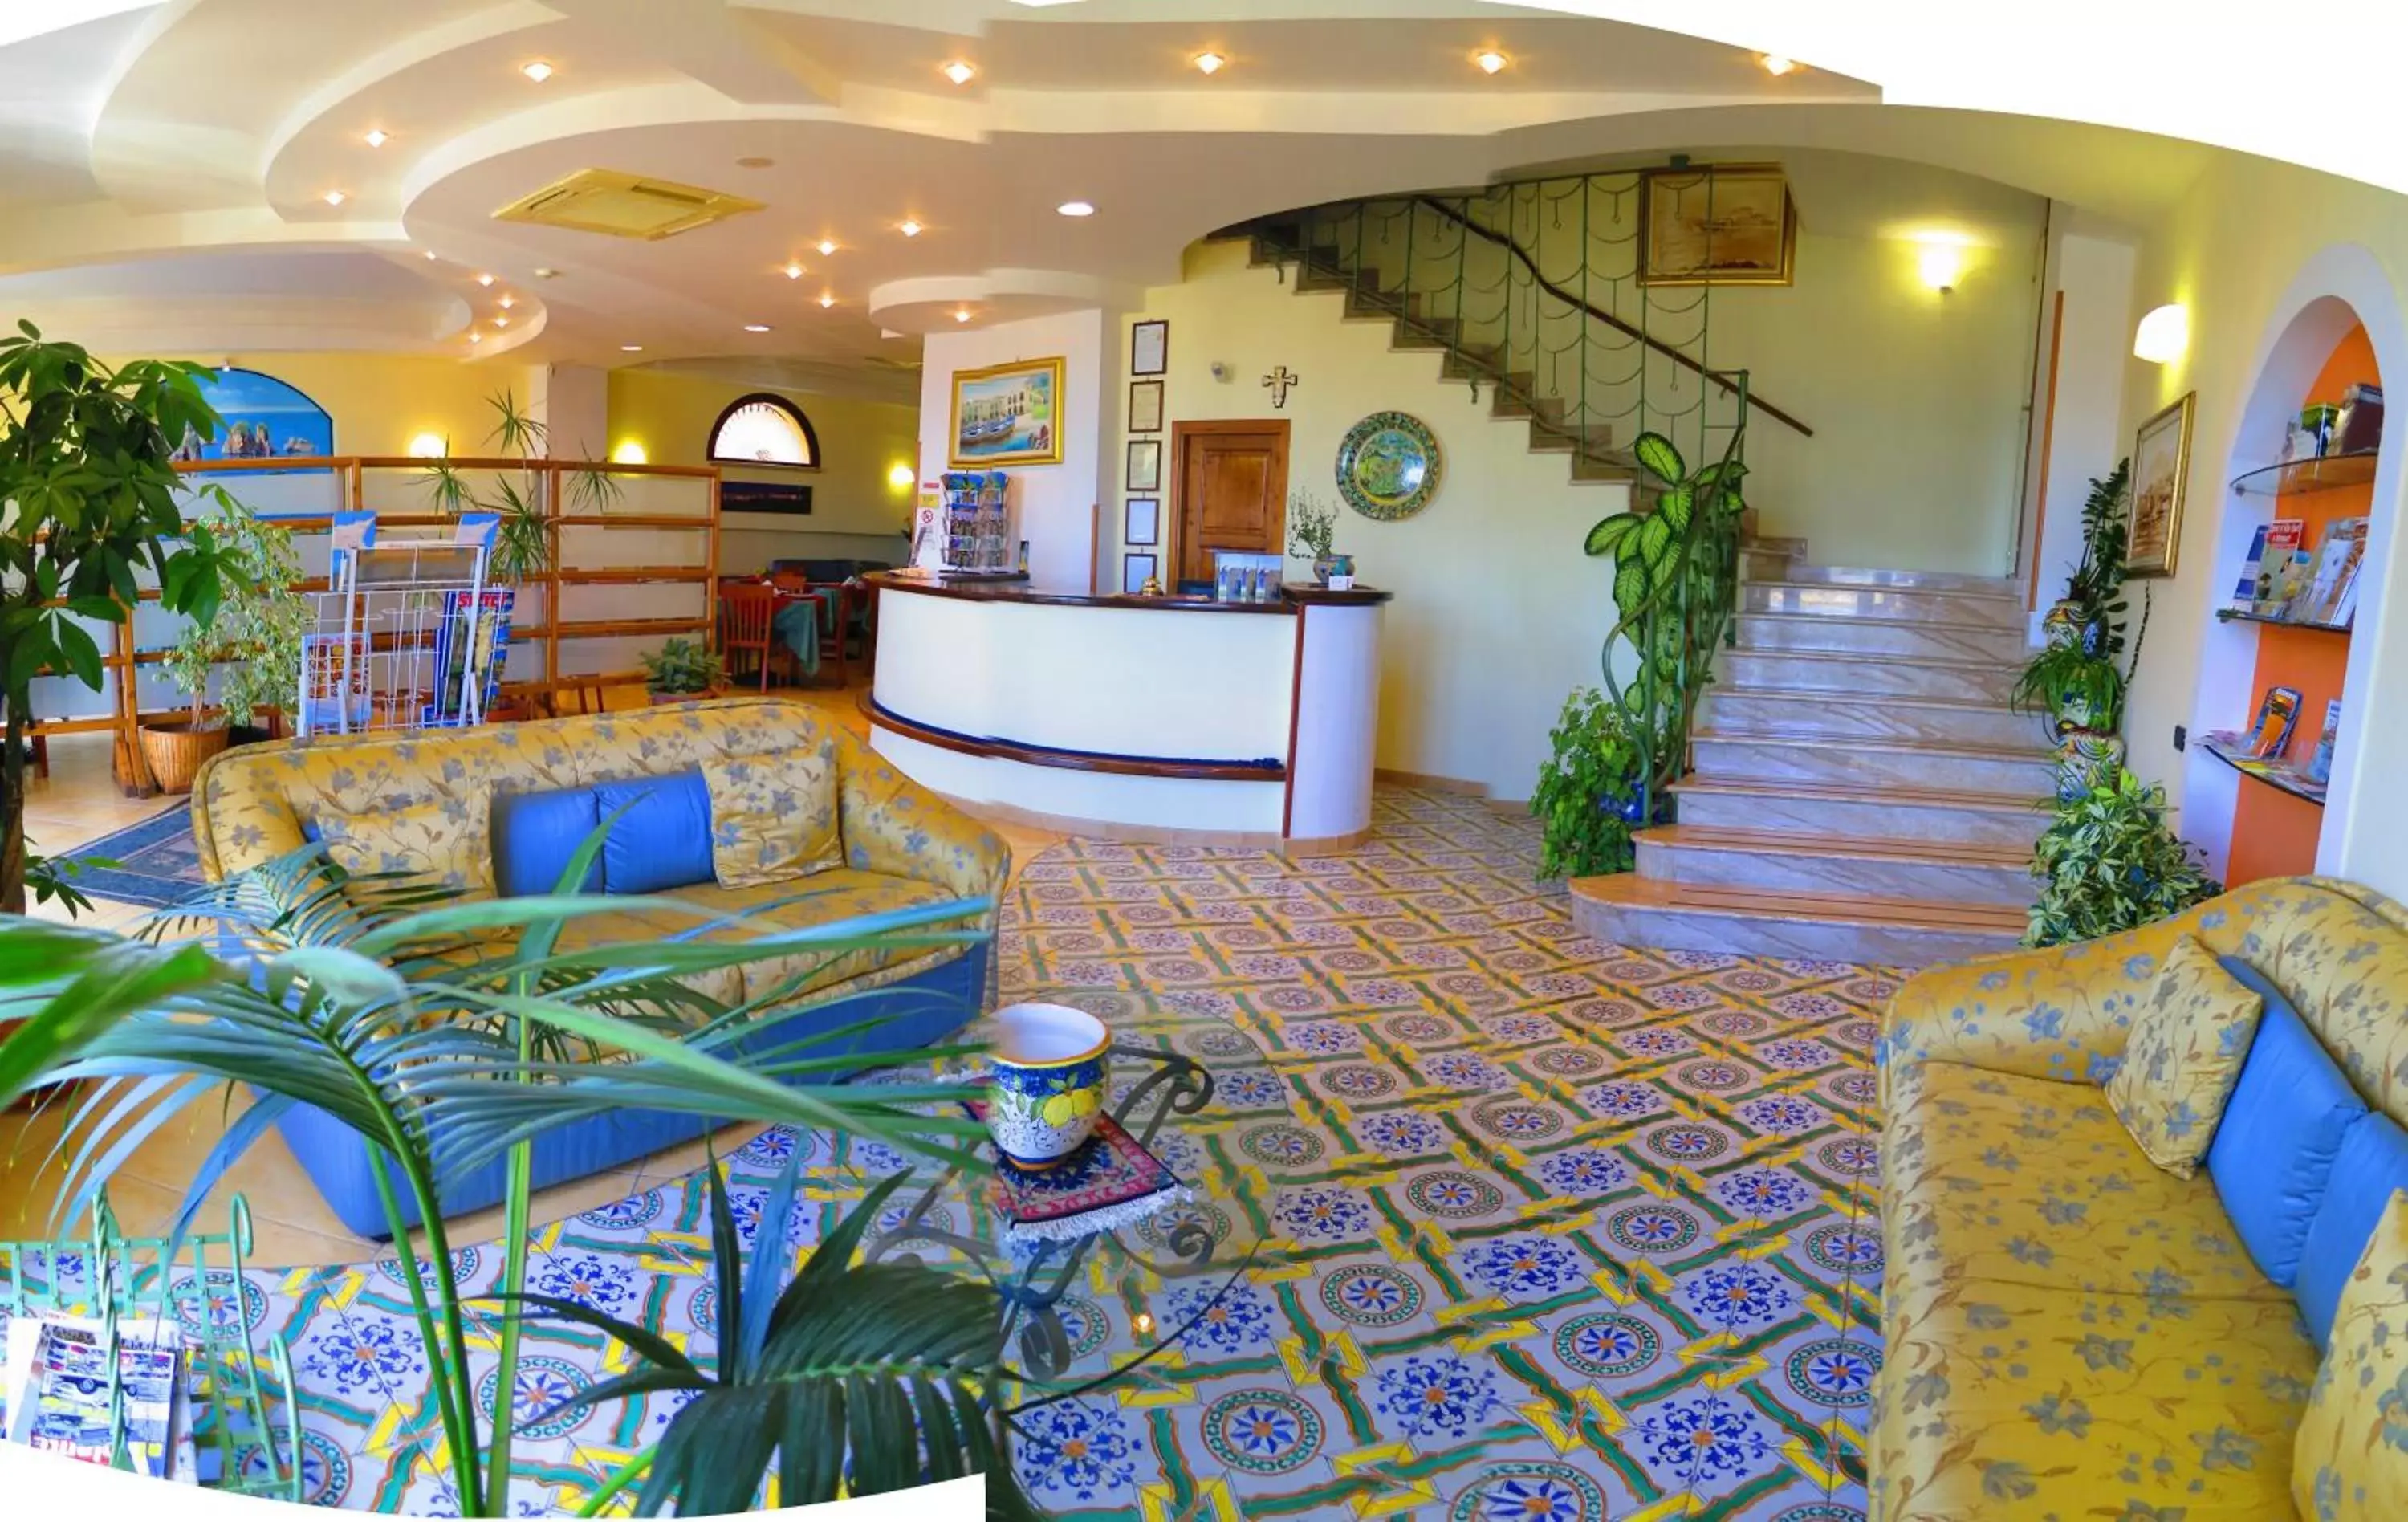 Lobby or reception, Lobby/Reception in Hotel Cala Marina